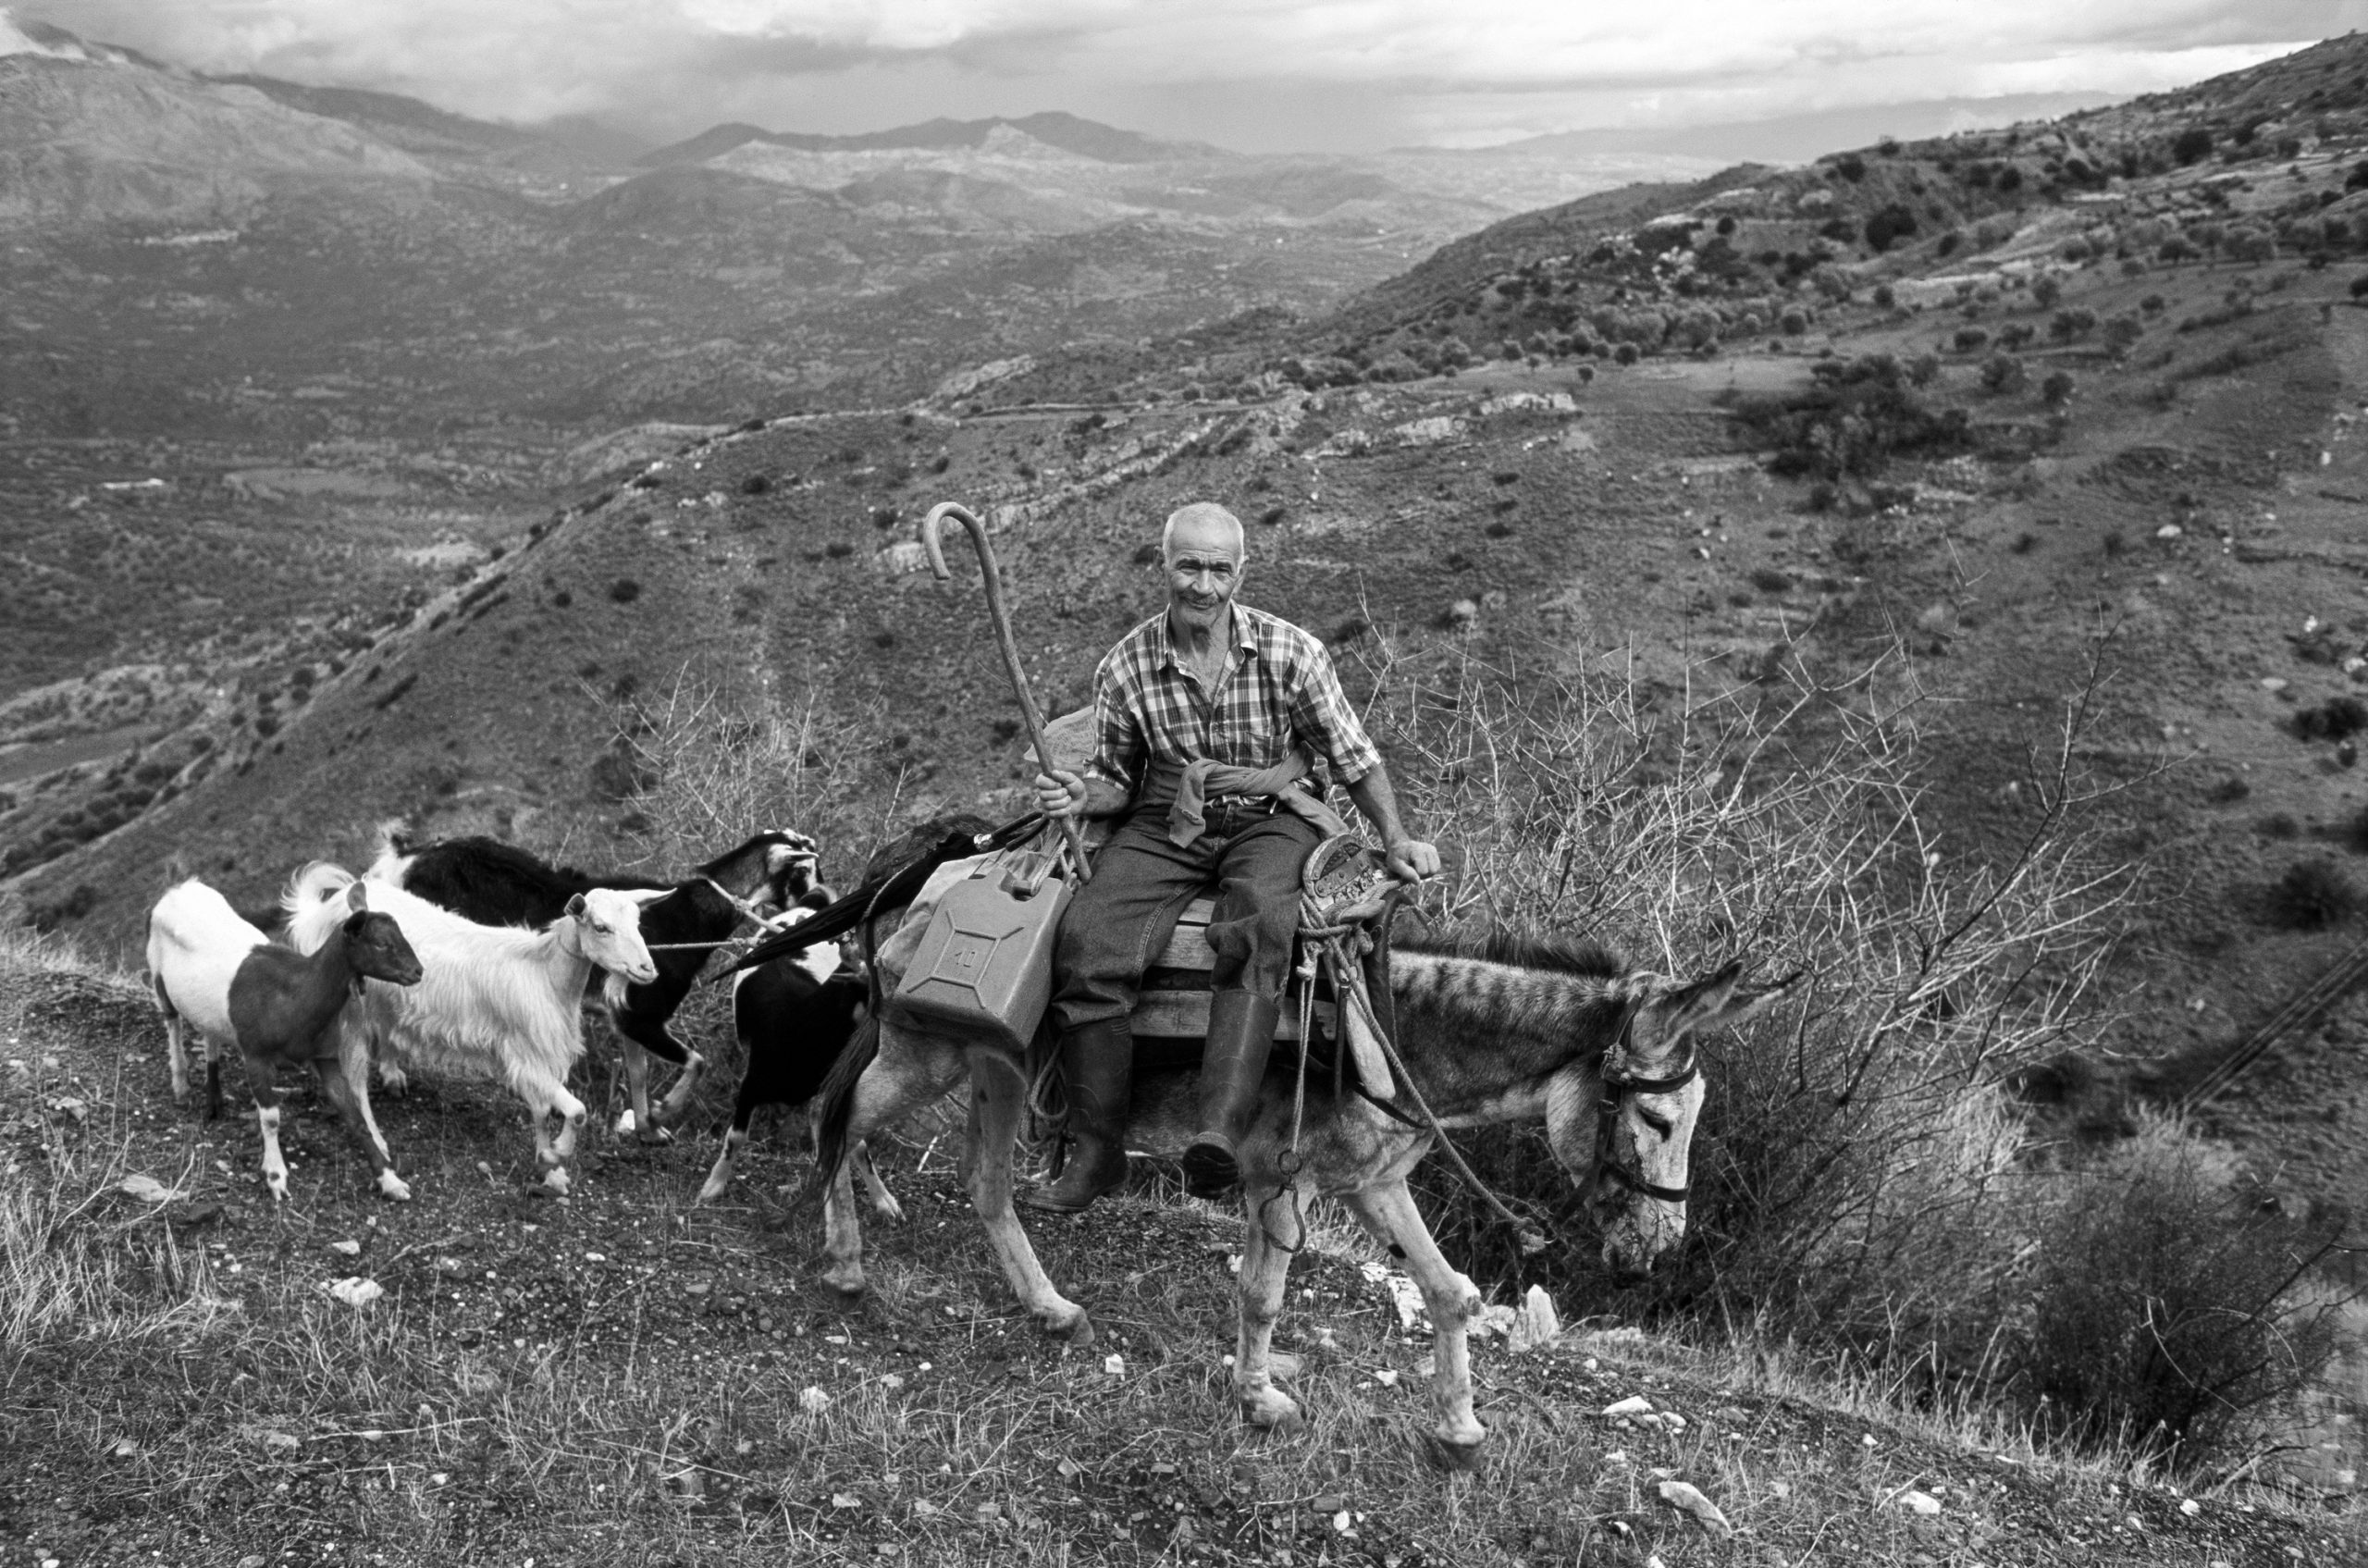 Die Netze für die Olivenernte sind ausgelegt und die Tiere versorgt. Nach vollbrachtem Tagwerk kehrt Jorgos am Abend in sein Dorf zurück. | Foto: Wolfgang Bernauer